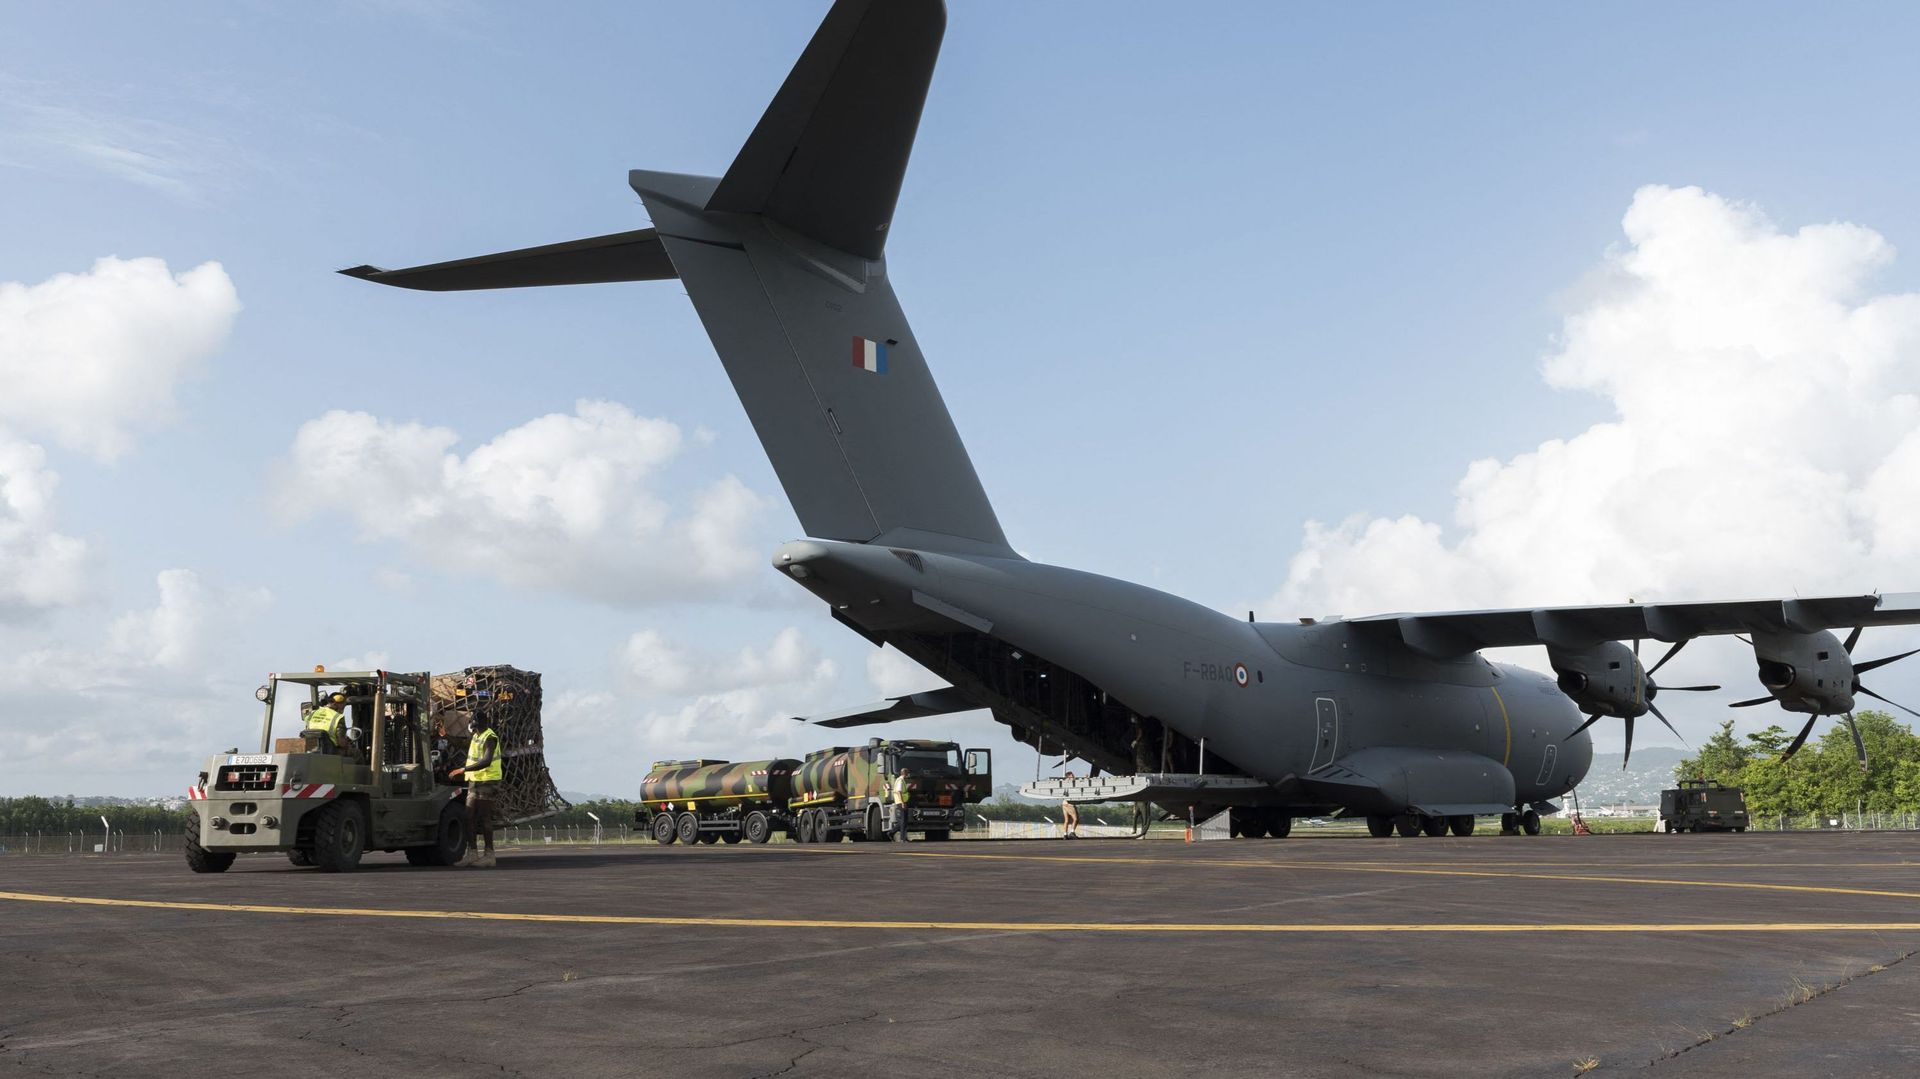 Des modules de réanimation militaire (MMR) en cours de déchargement d'un avion militaire A400M à son arrivée sur le tarmac de la Martinique-Aimé Césaire